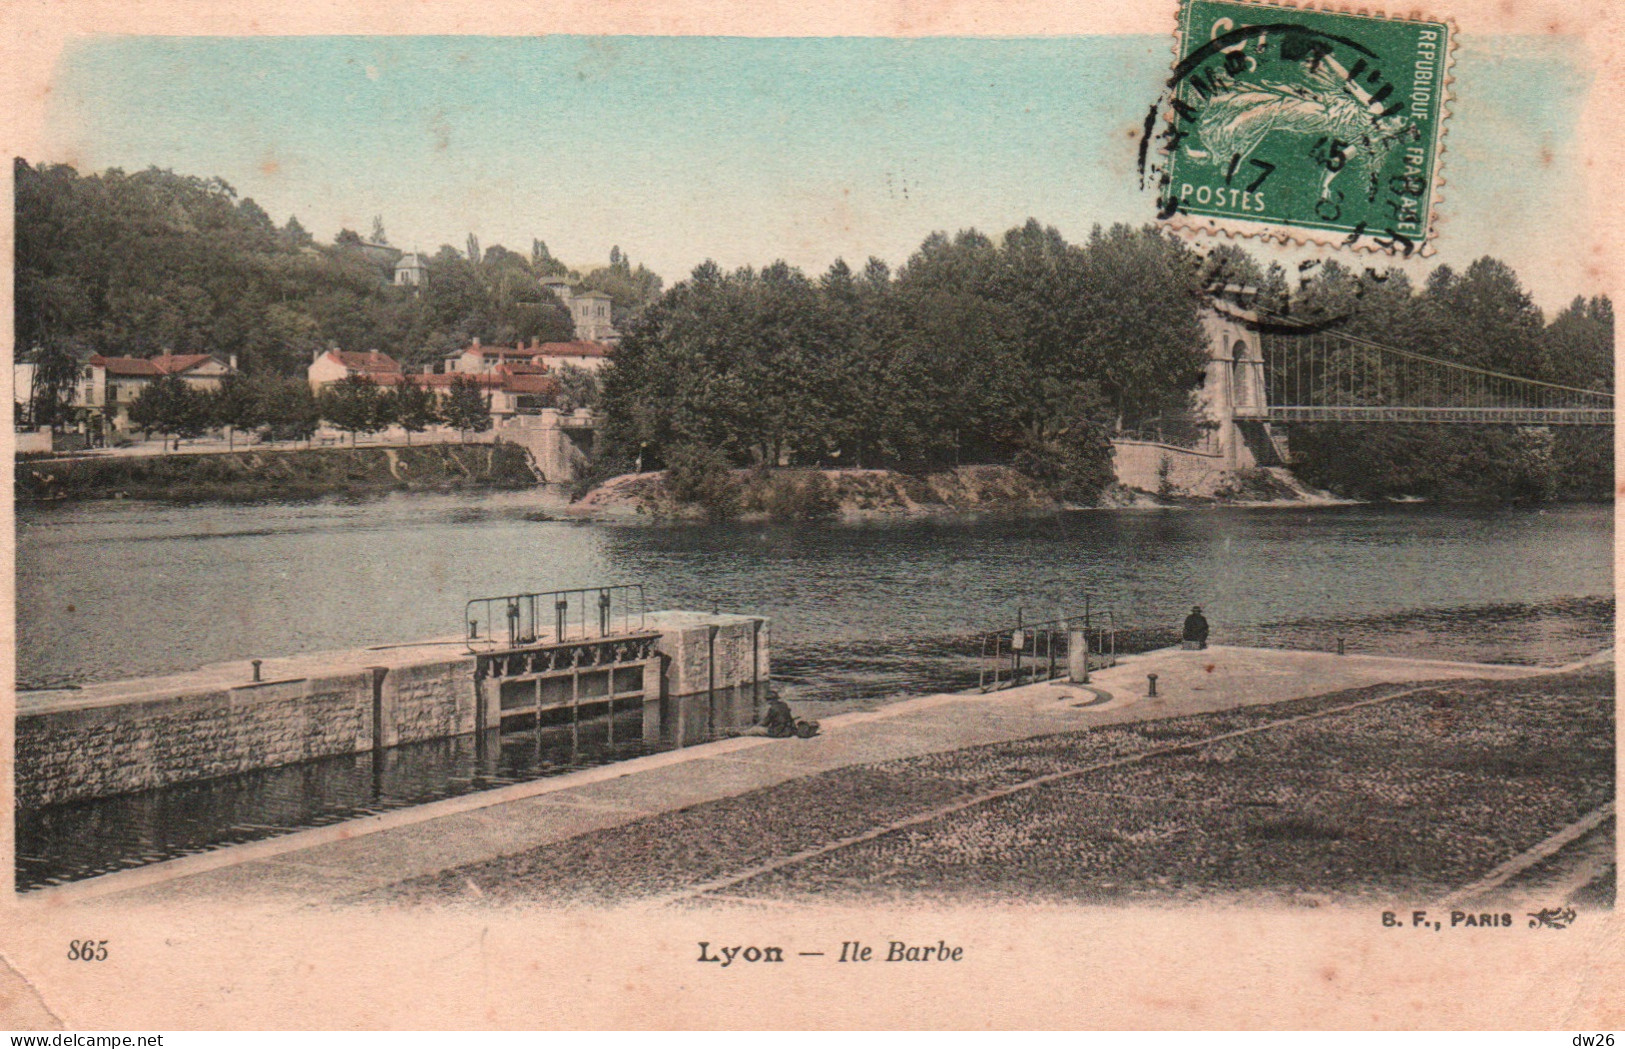 Lyon - L'Ile Barbe, Pont Suspendu Sur La Saône, écluse - Carte B.F. Paris Colorisée N° 865 - Lyon 9